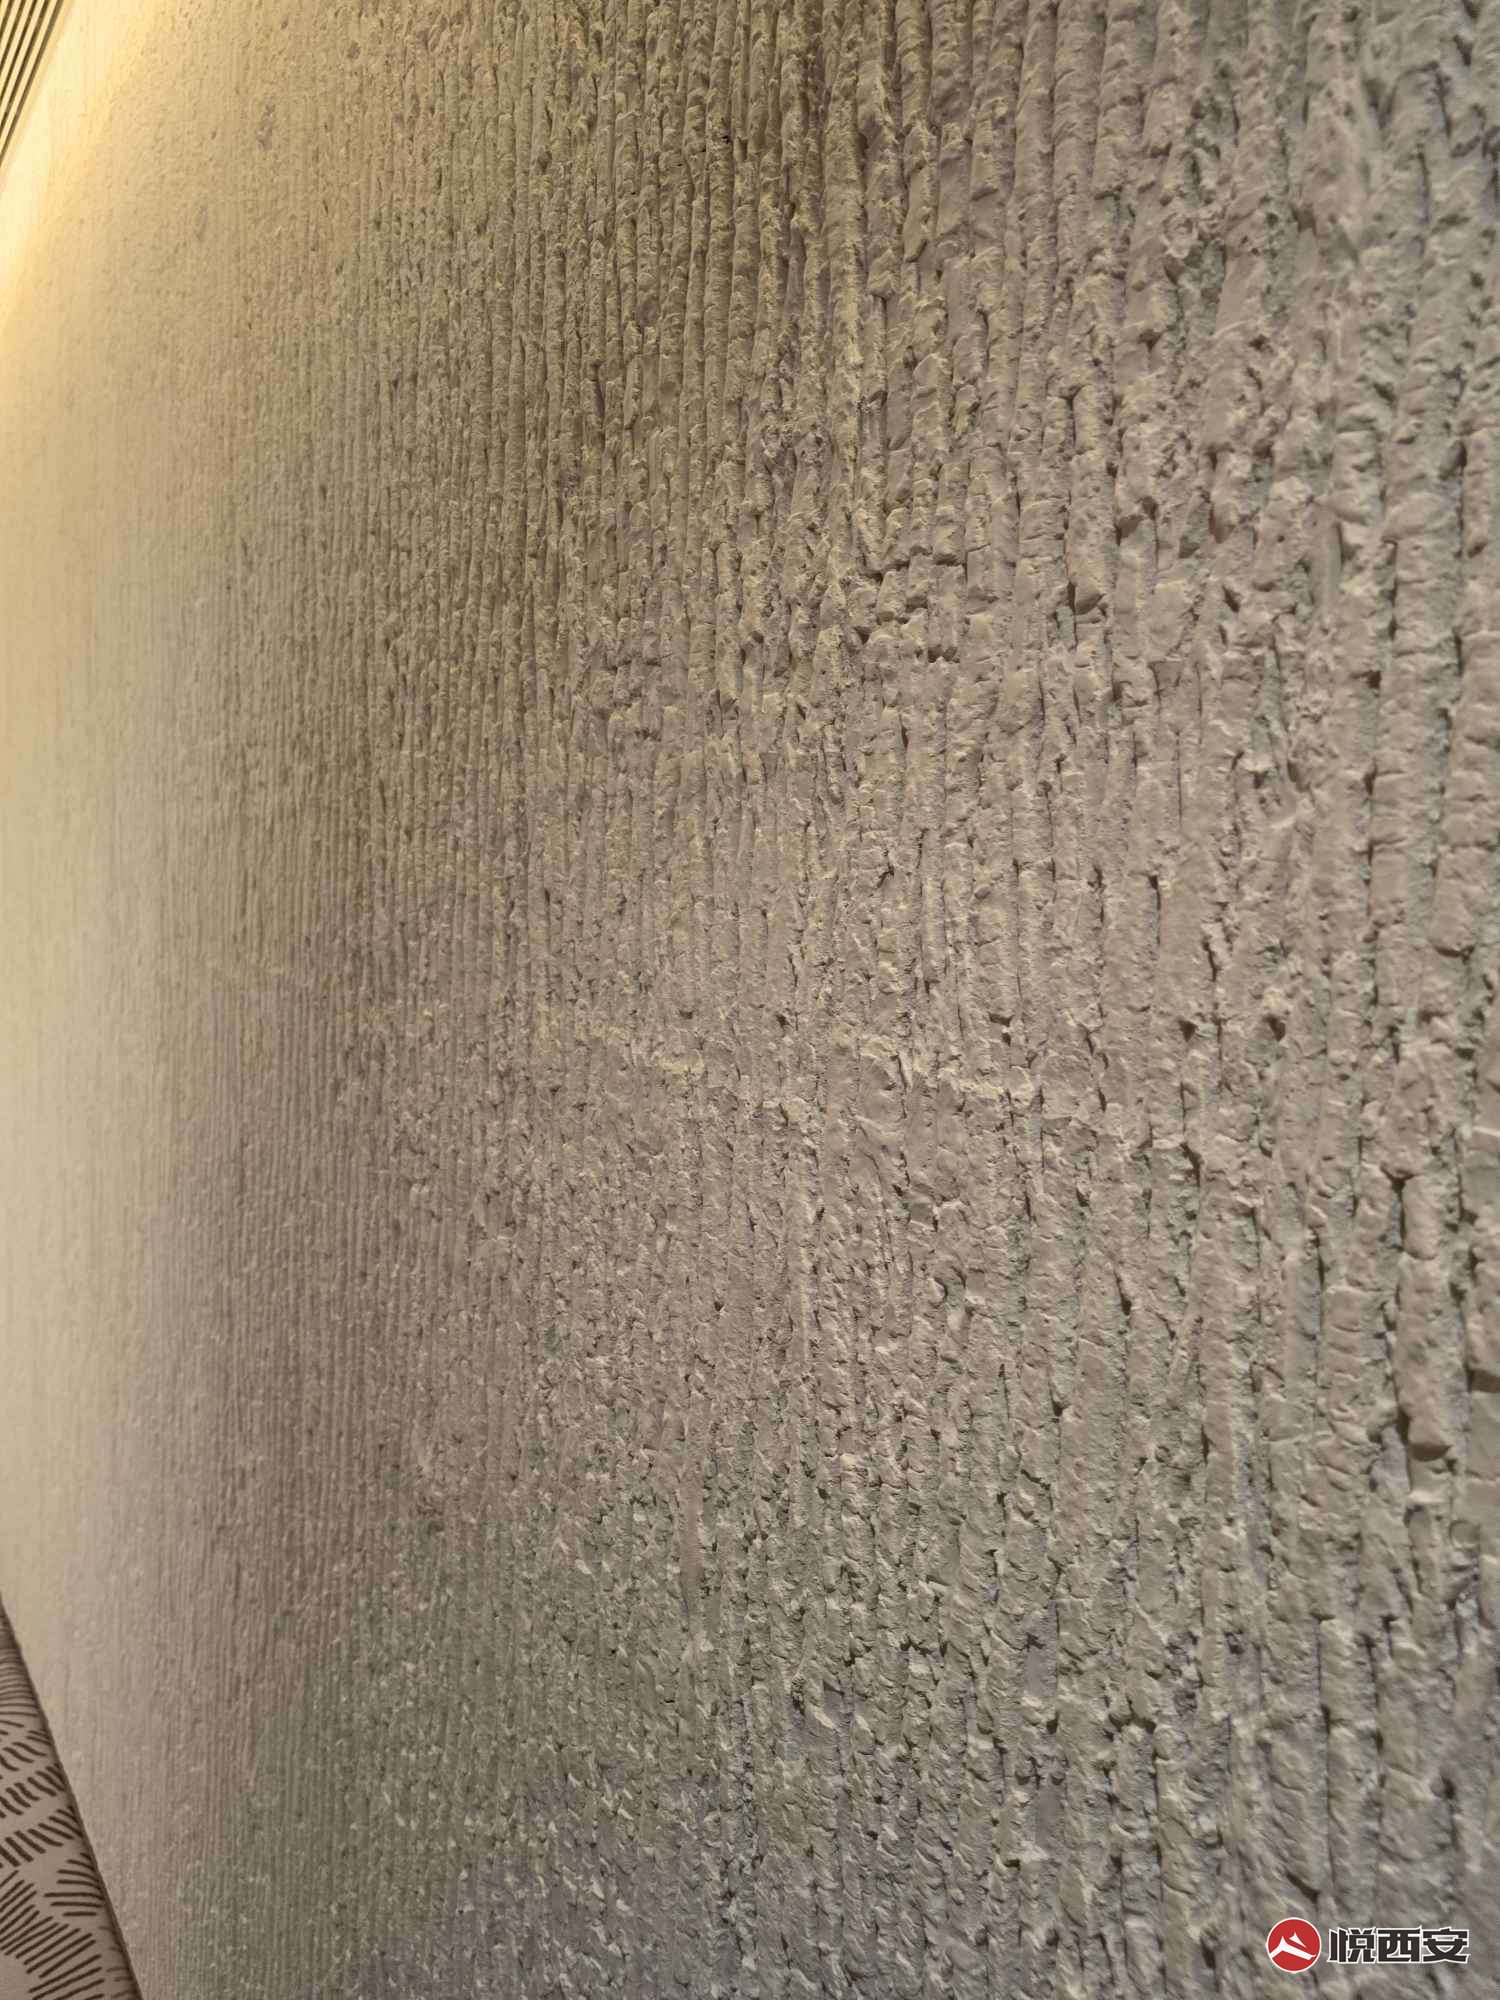 西安万象城这种树皮纹理墙面很好看